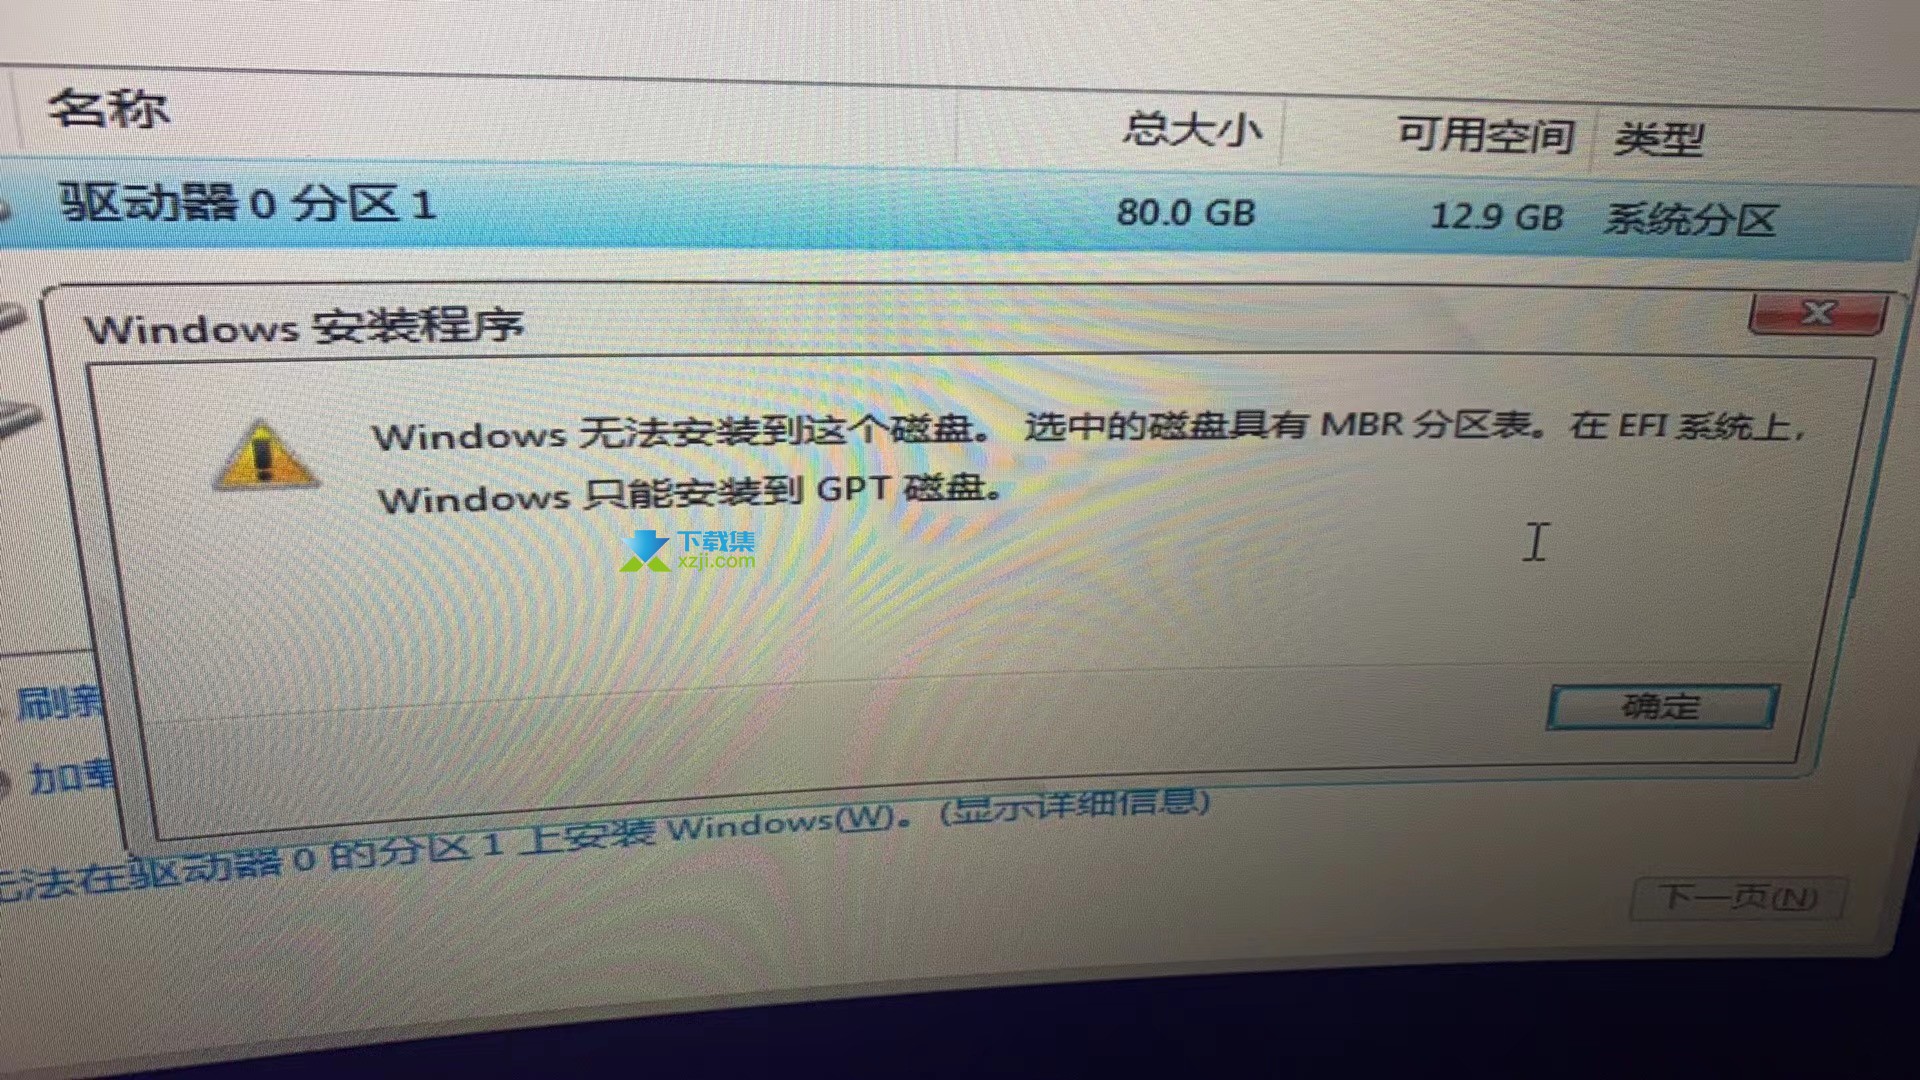 Windows无法安装到这个磁盘,选中磁盘具有MBR分区表解决方法